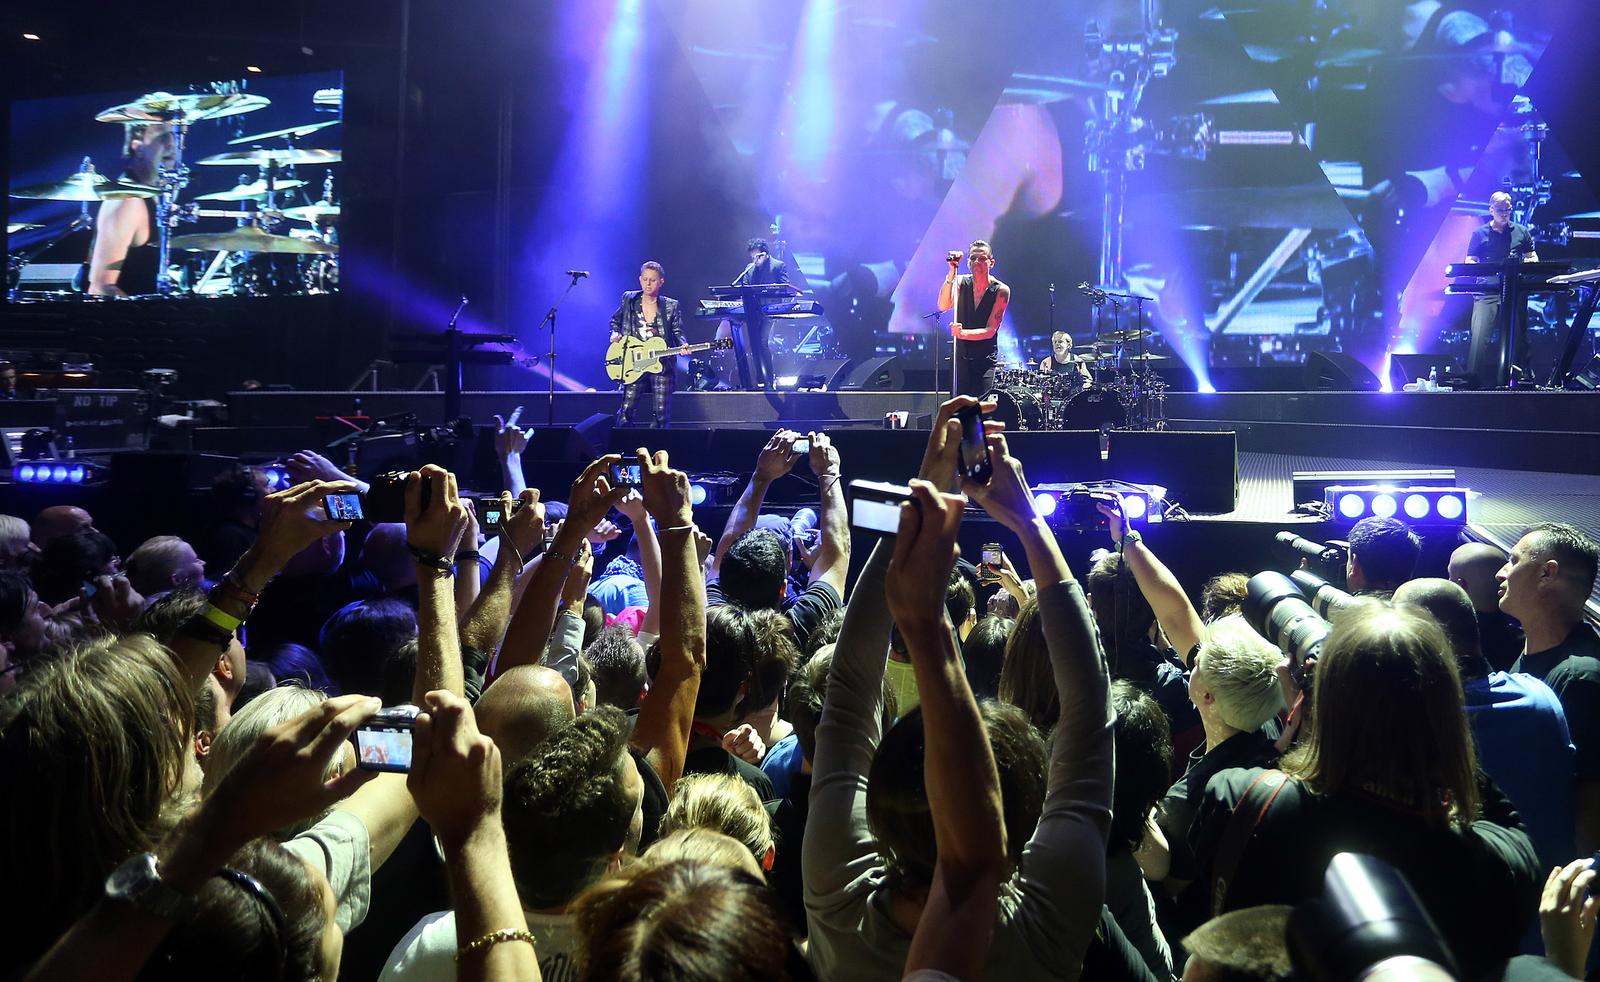 23.05.2013., Zagreb - Britanska grupa Depeche mode odrzala je veliki koncert u zagrebackoj Areni. Photo: Sanjin Strukic/PIXSELL